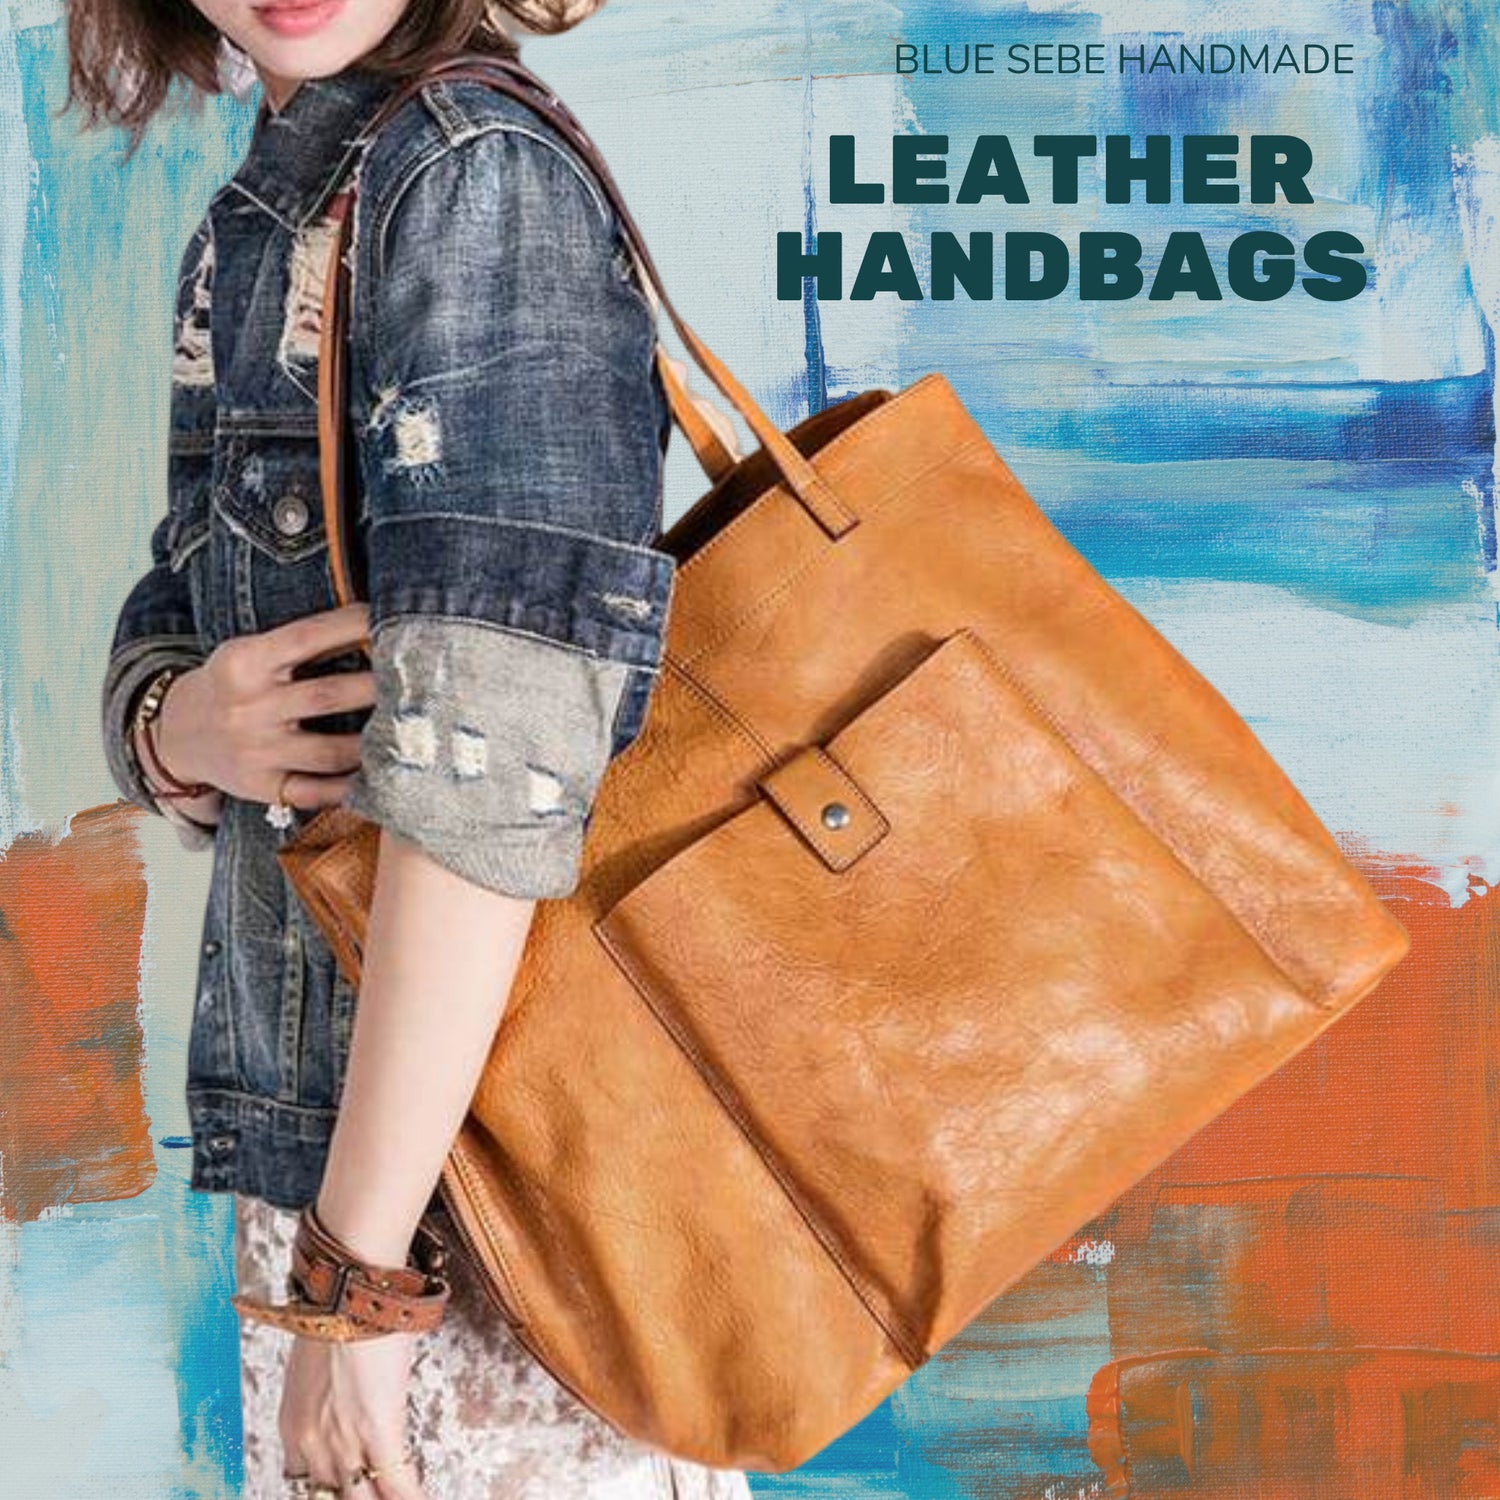 Handmade Leather Bags | Handbag, Tote bag, satchel, Purses | Blue Sebe